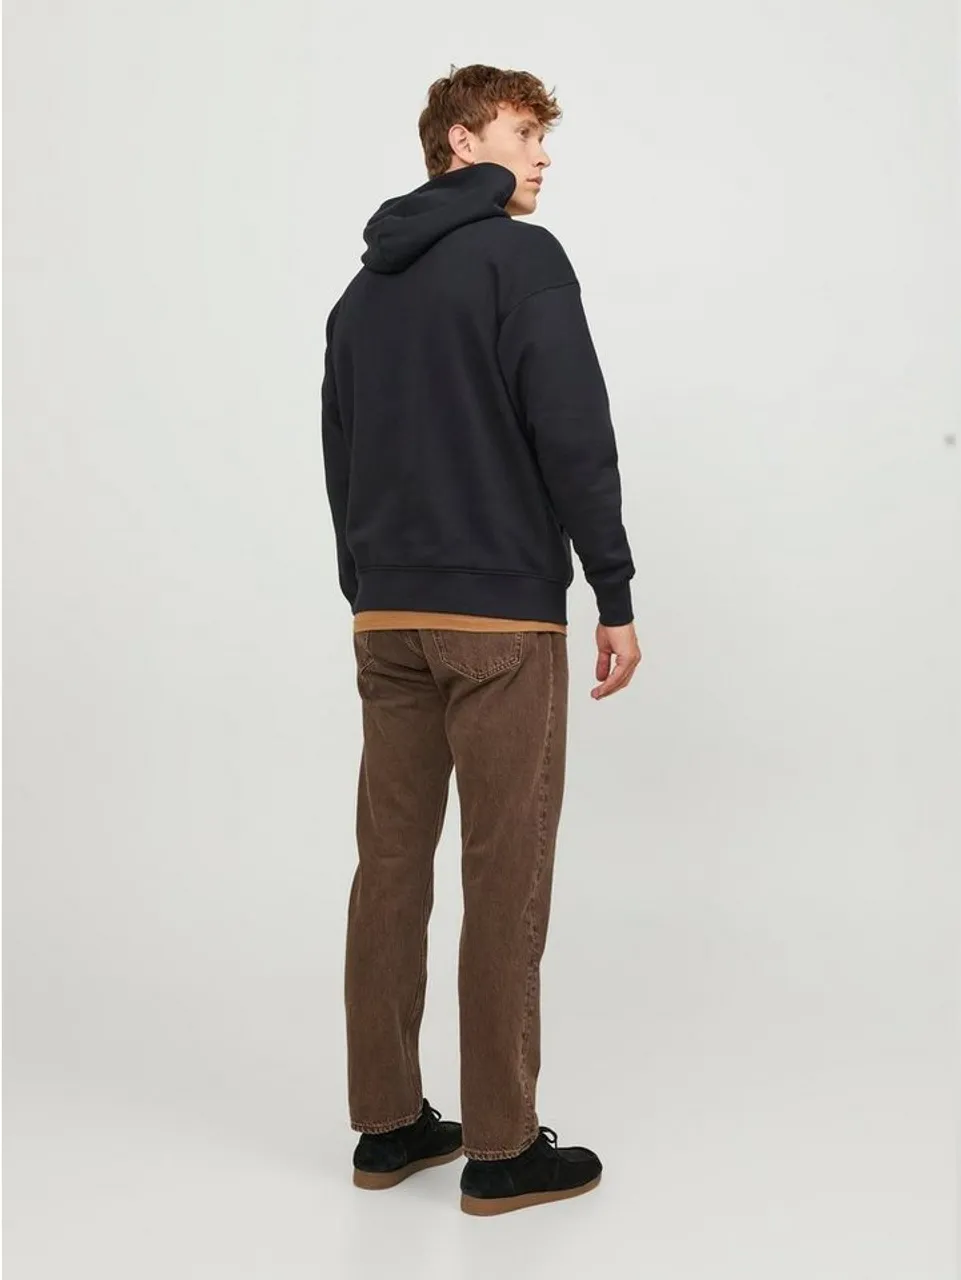 Jack & Jones Hoodie Basic Sweater Langarm Shirt Hoodie Pullover 6563 in Schwarz